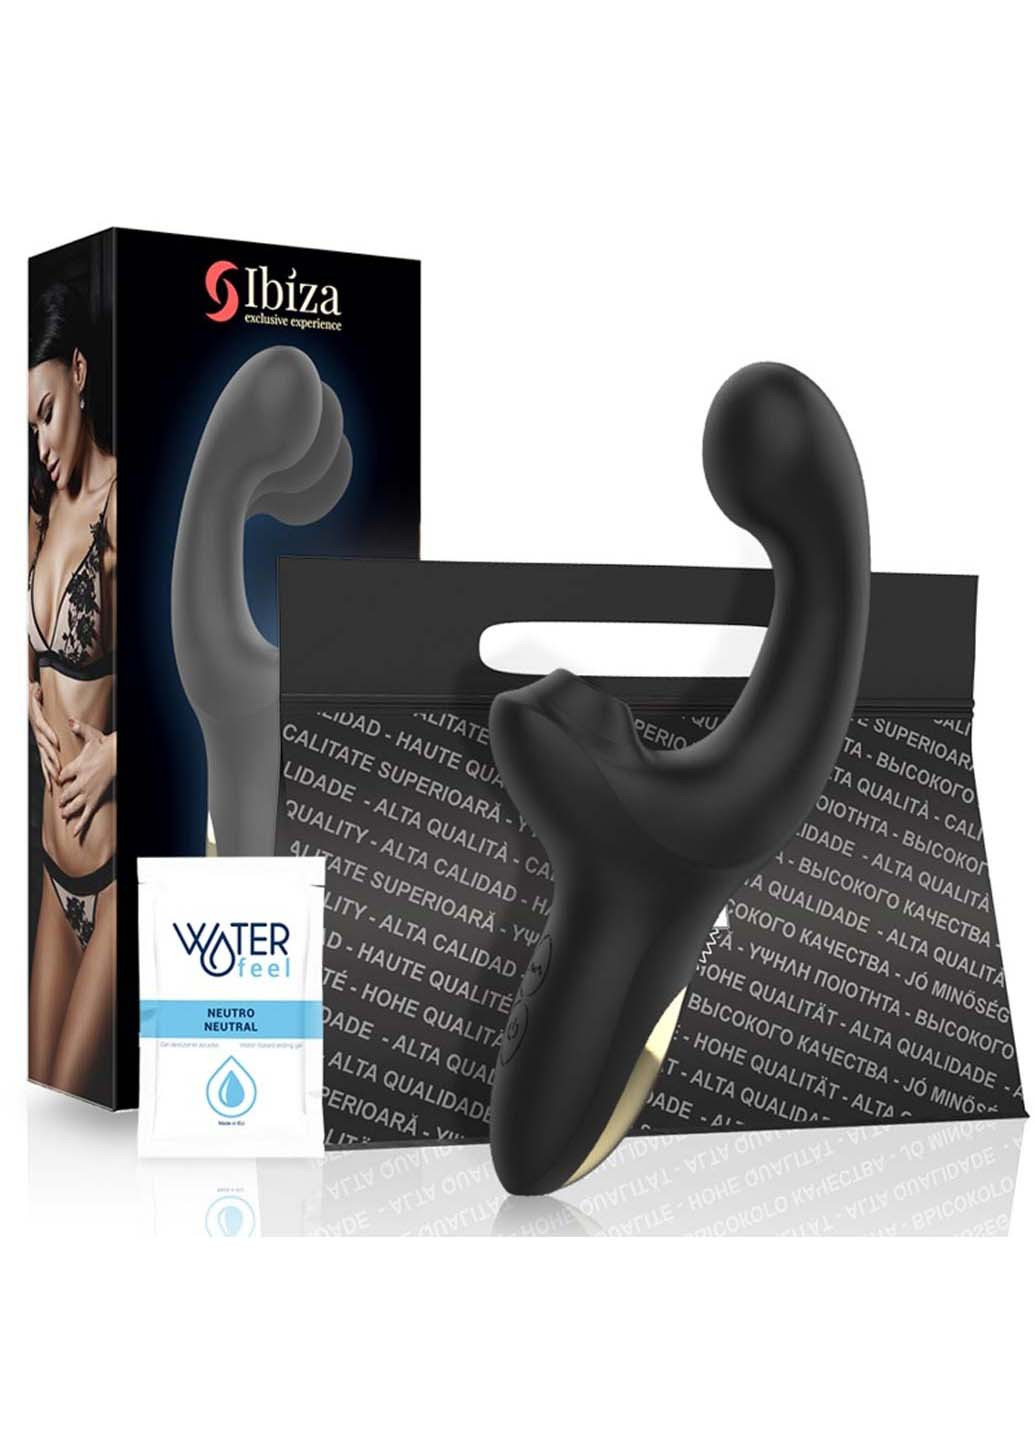 Вібромасажер для жінок Fingering Pulsing Vibrator Ibiza (277608250)